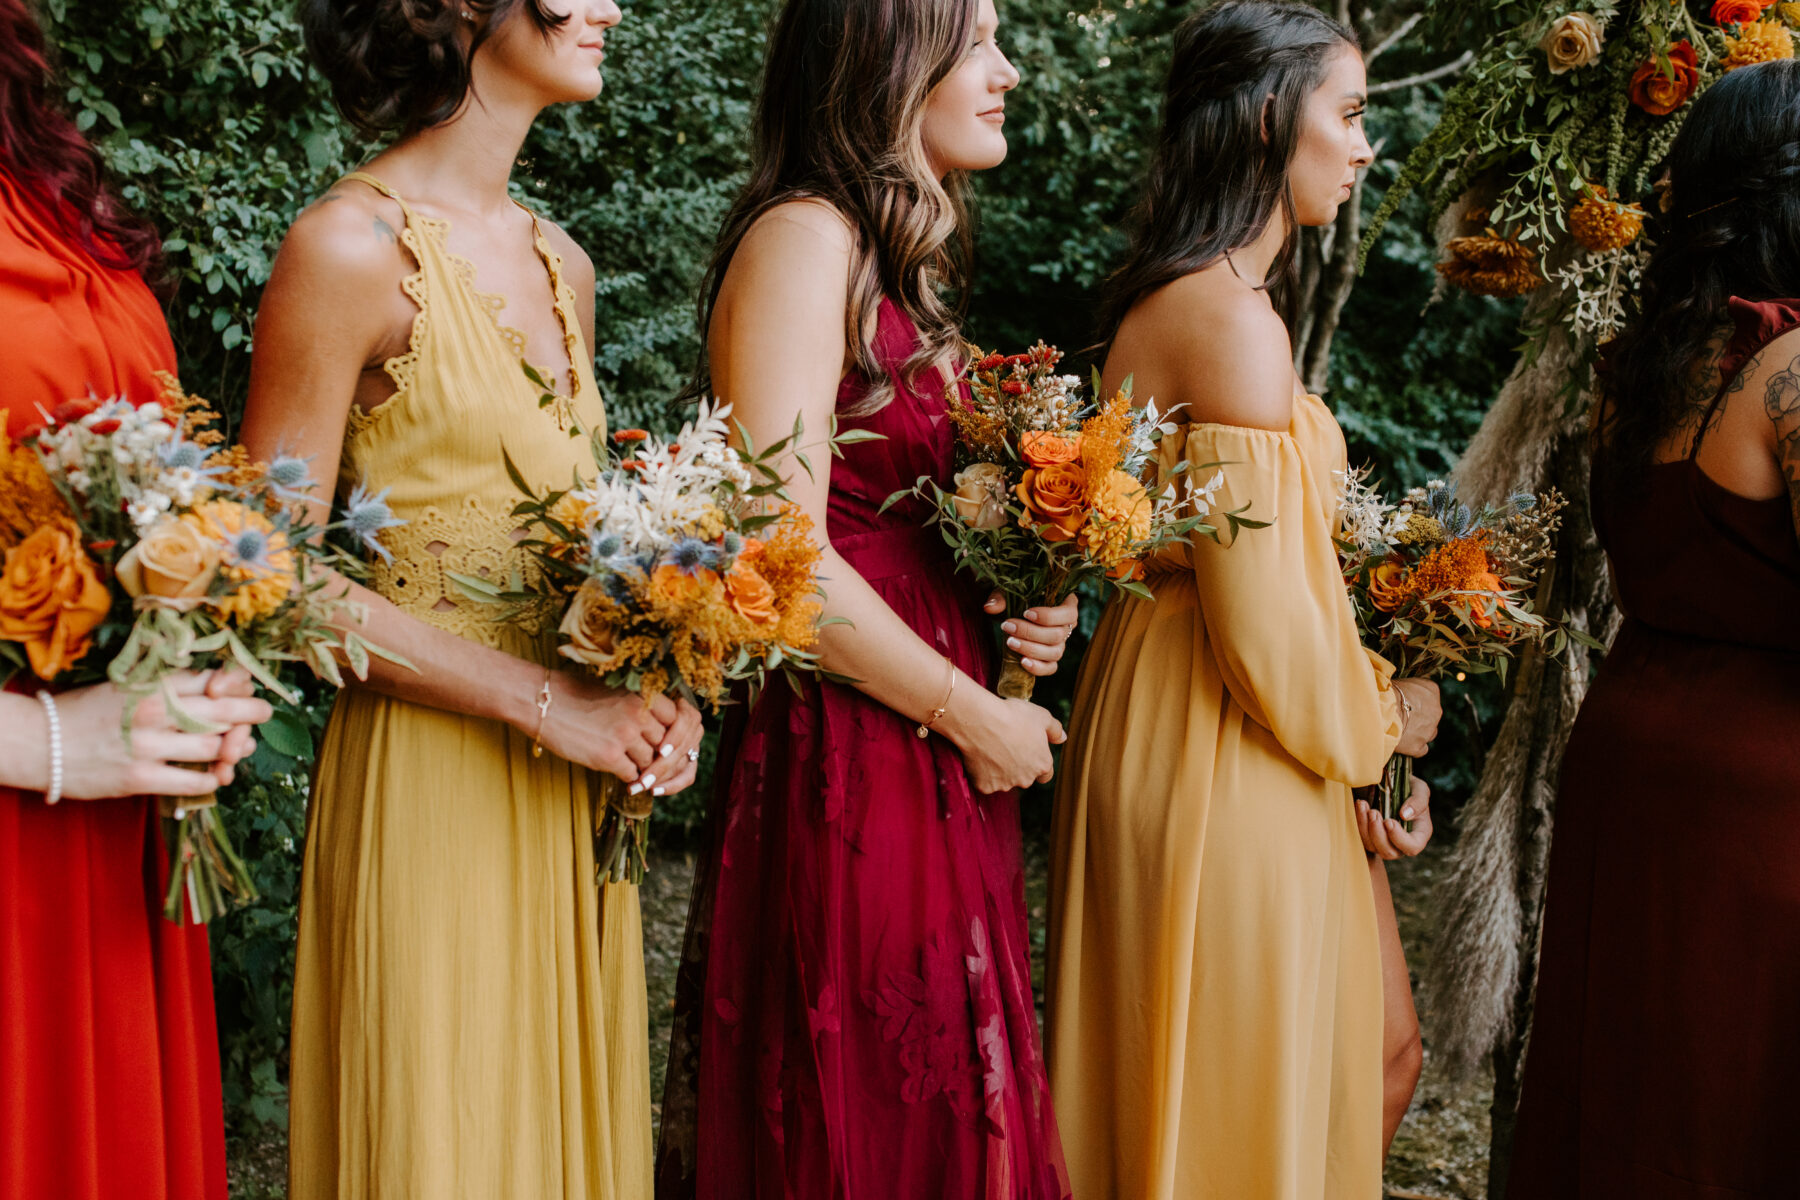 Autumn colored bridesmaid dresses